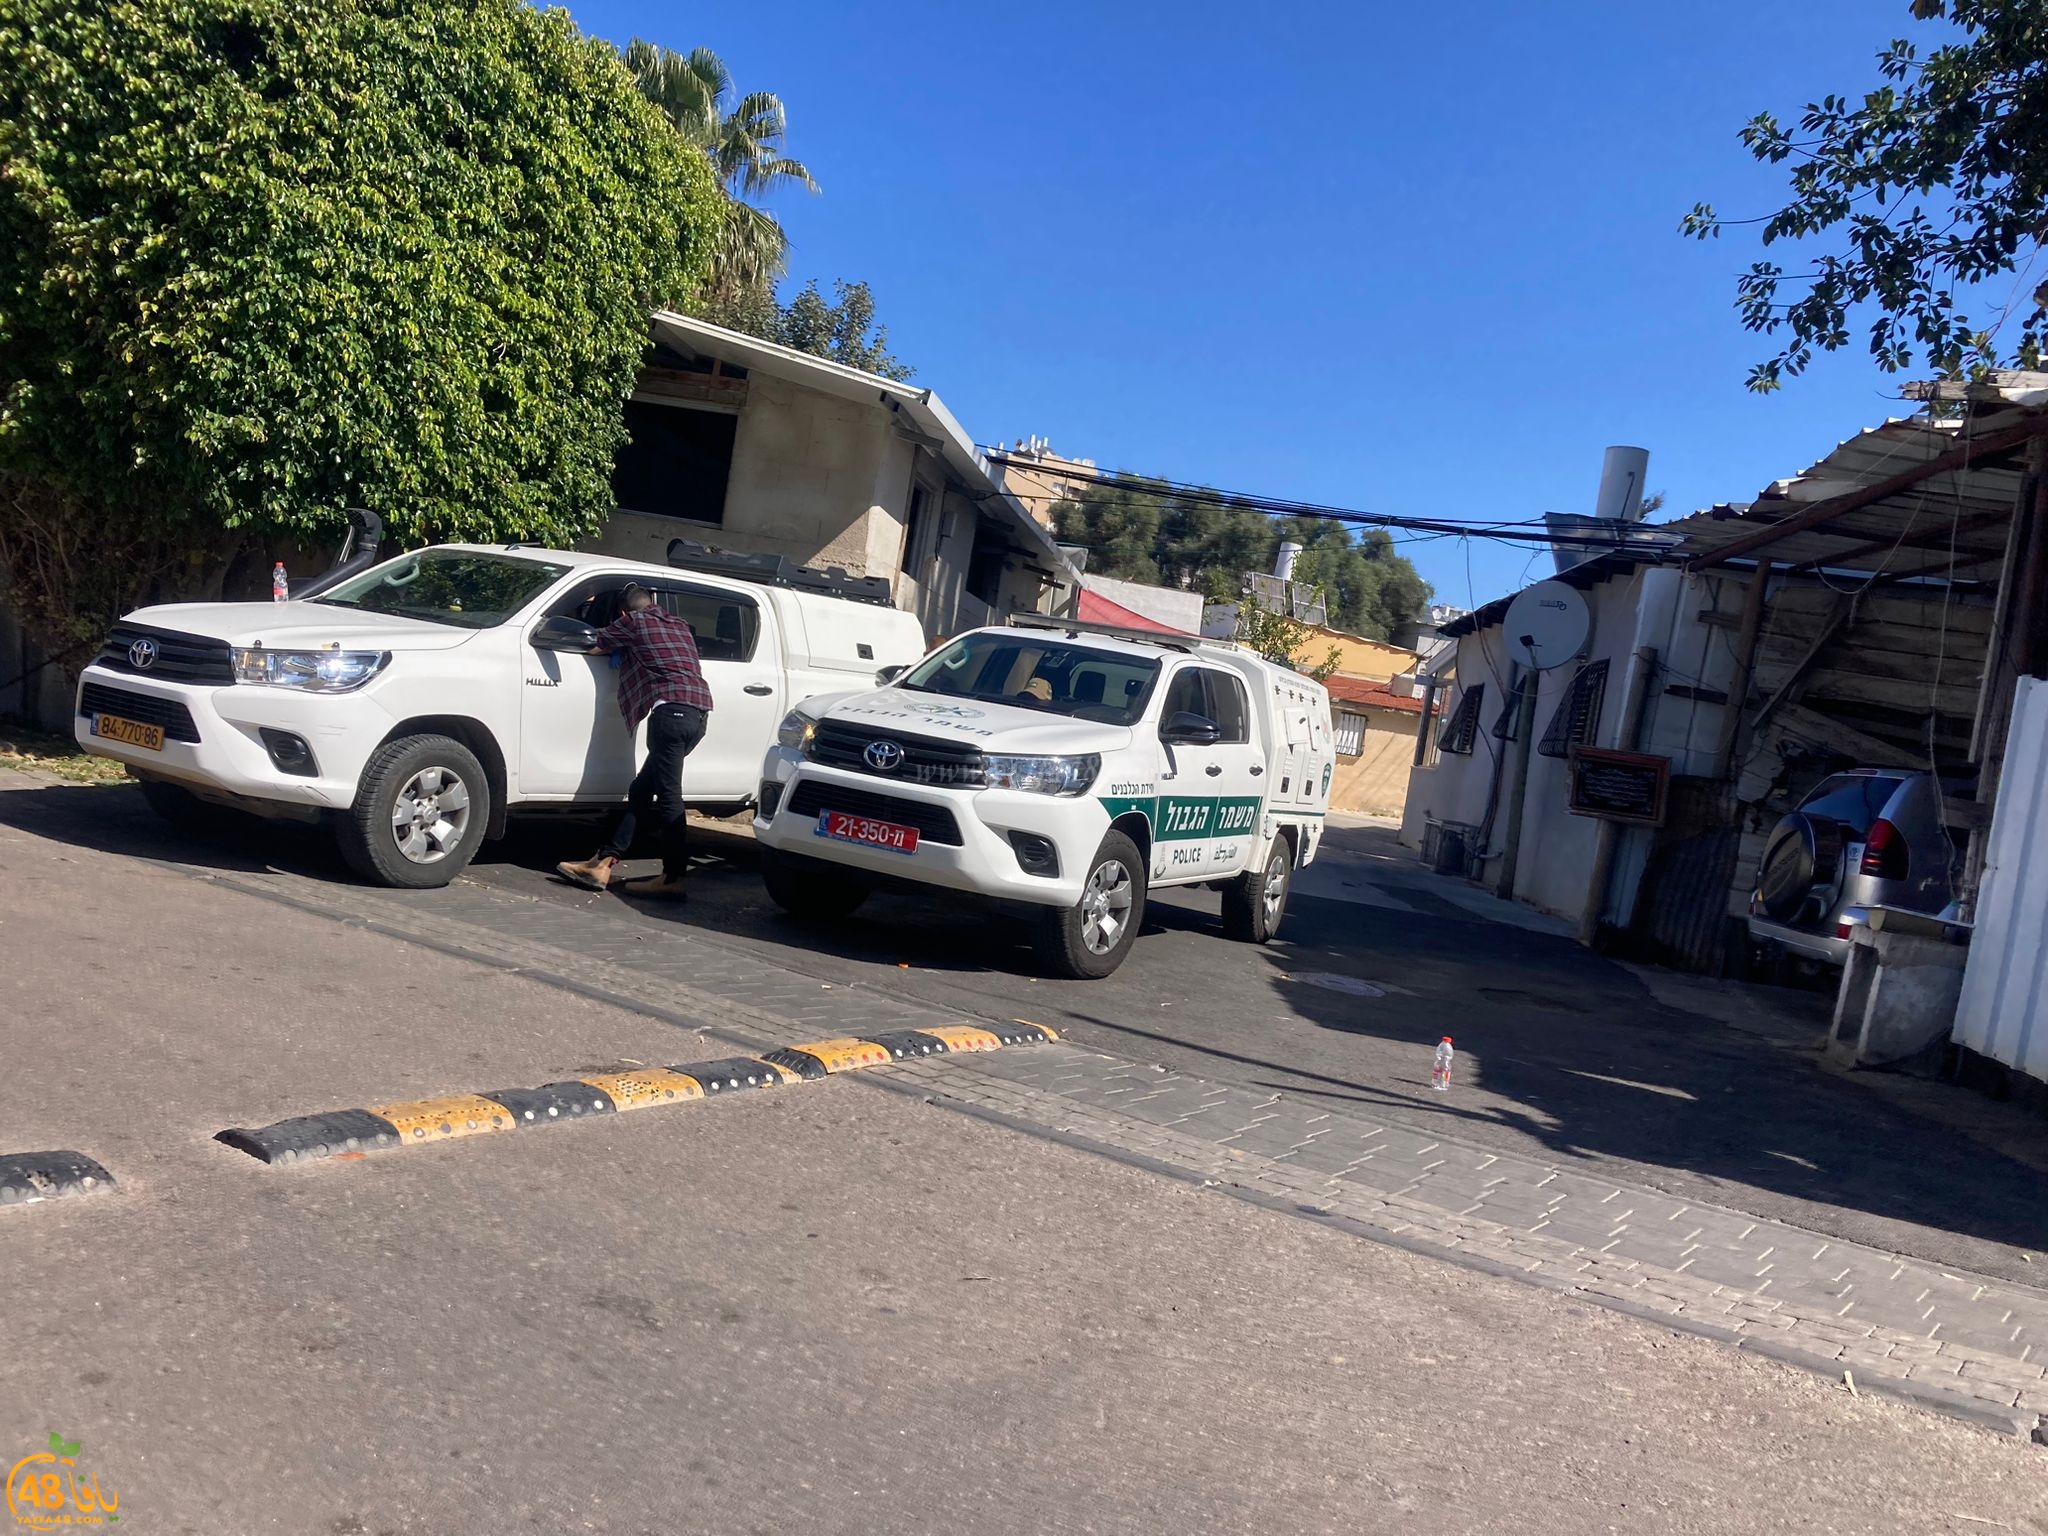   يافا: الشرطة تتسبب بأضرار لممتلكات المواطنين في بيارة دكة